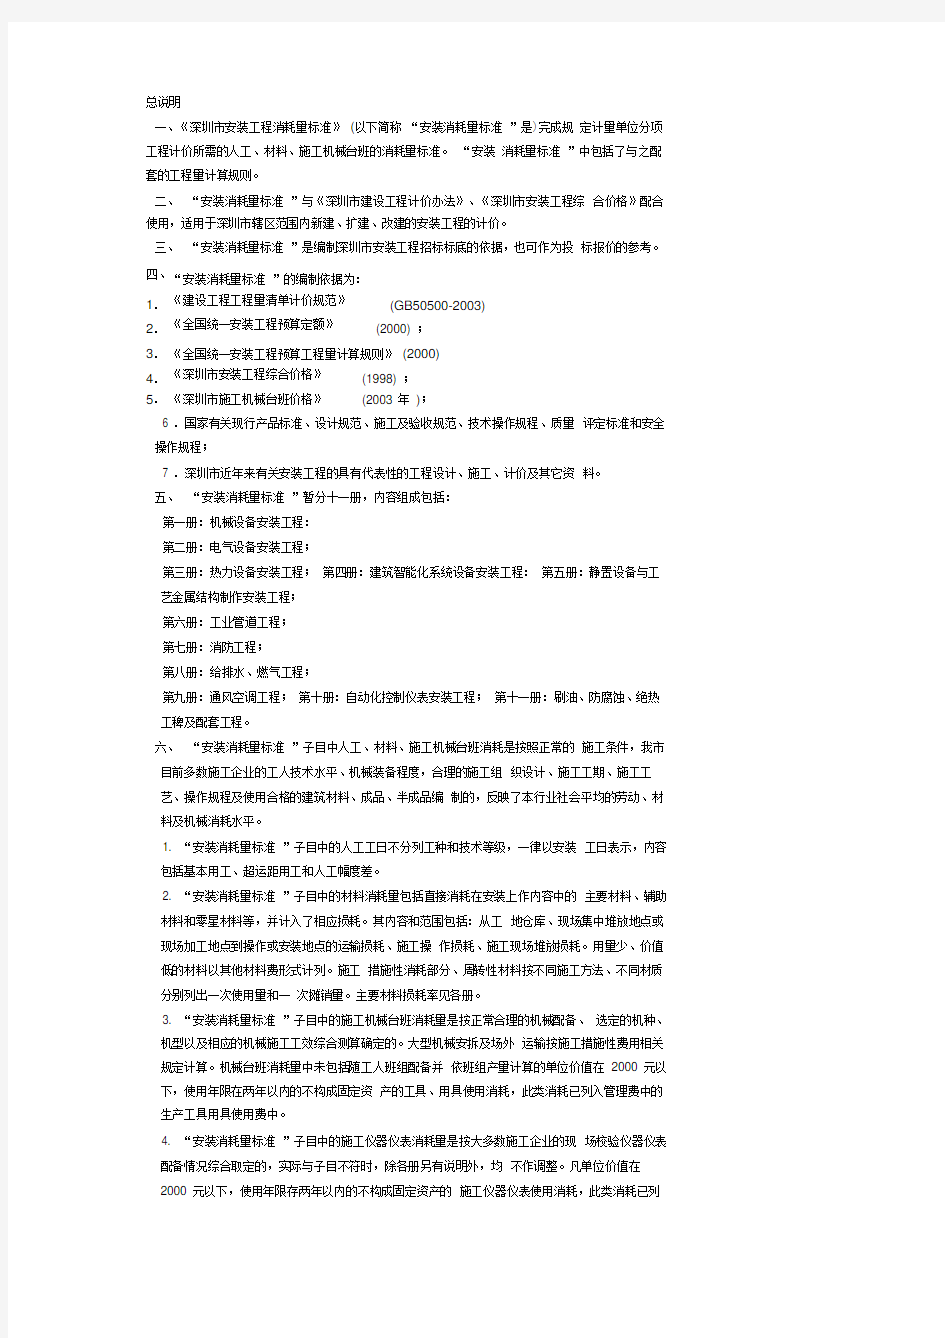 深圳市安装工程消耗量定额(2003)